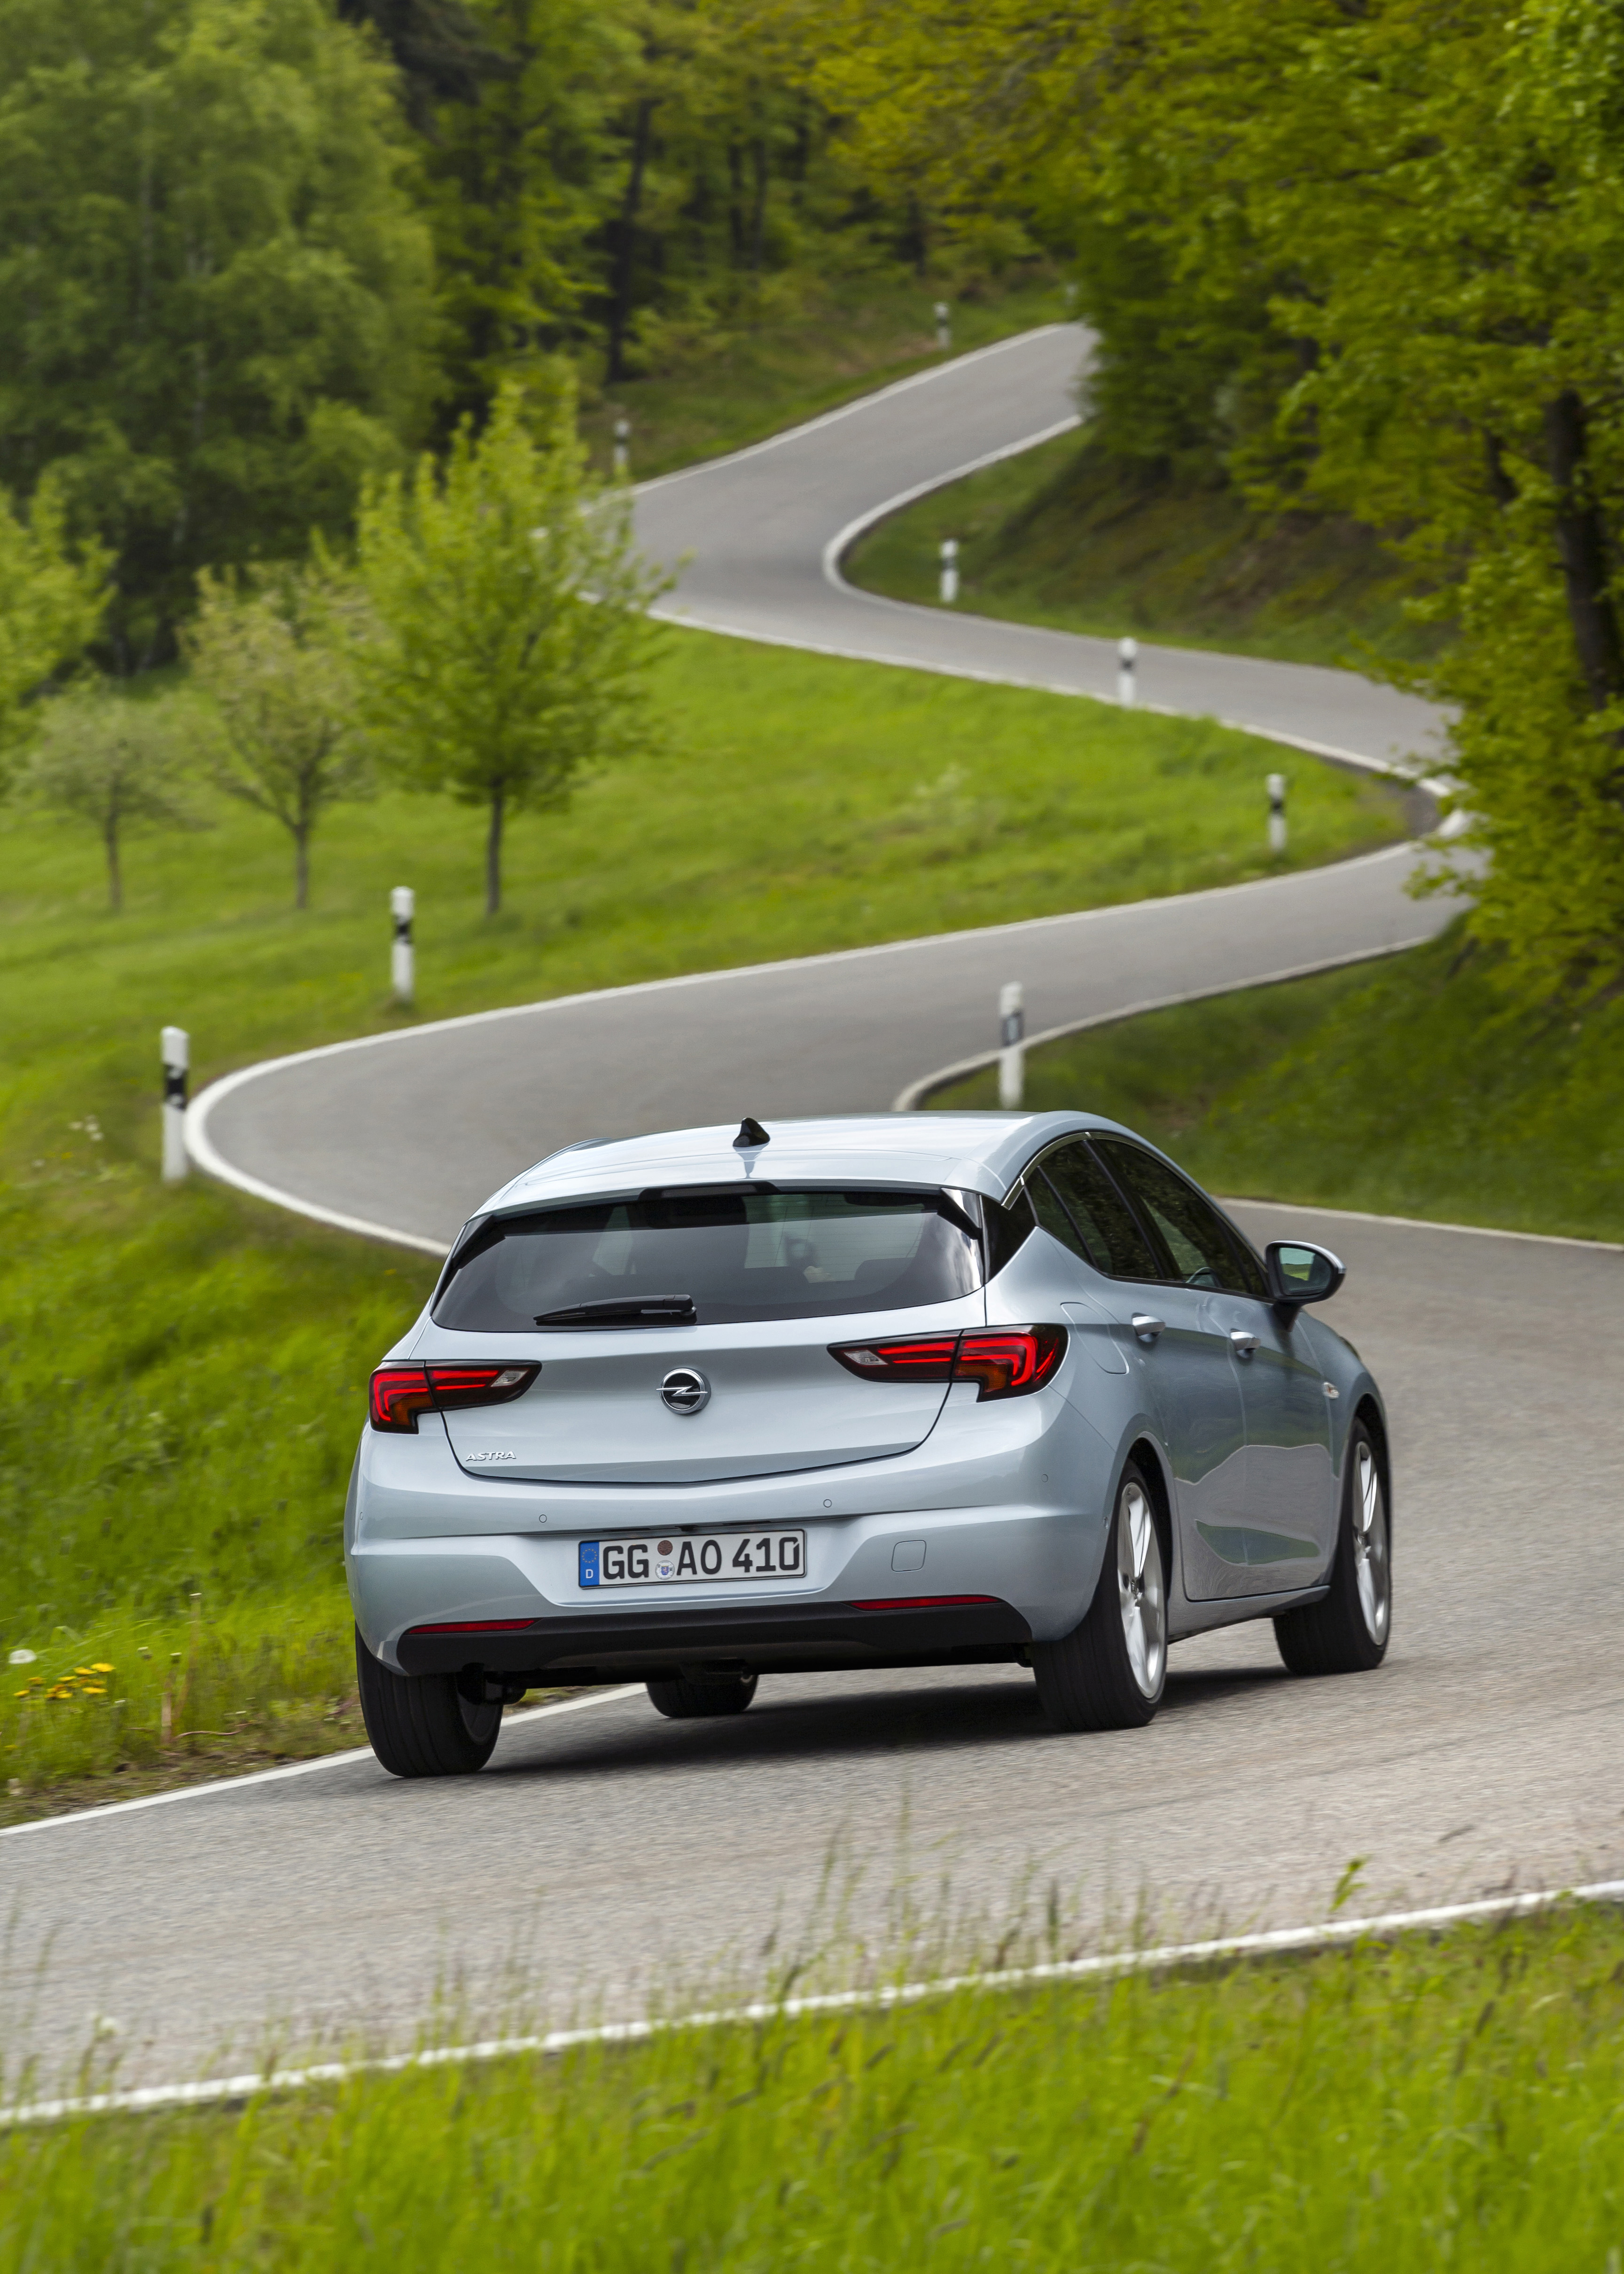 Opel Astra 2020 dimensioni e prezzo